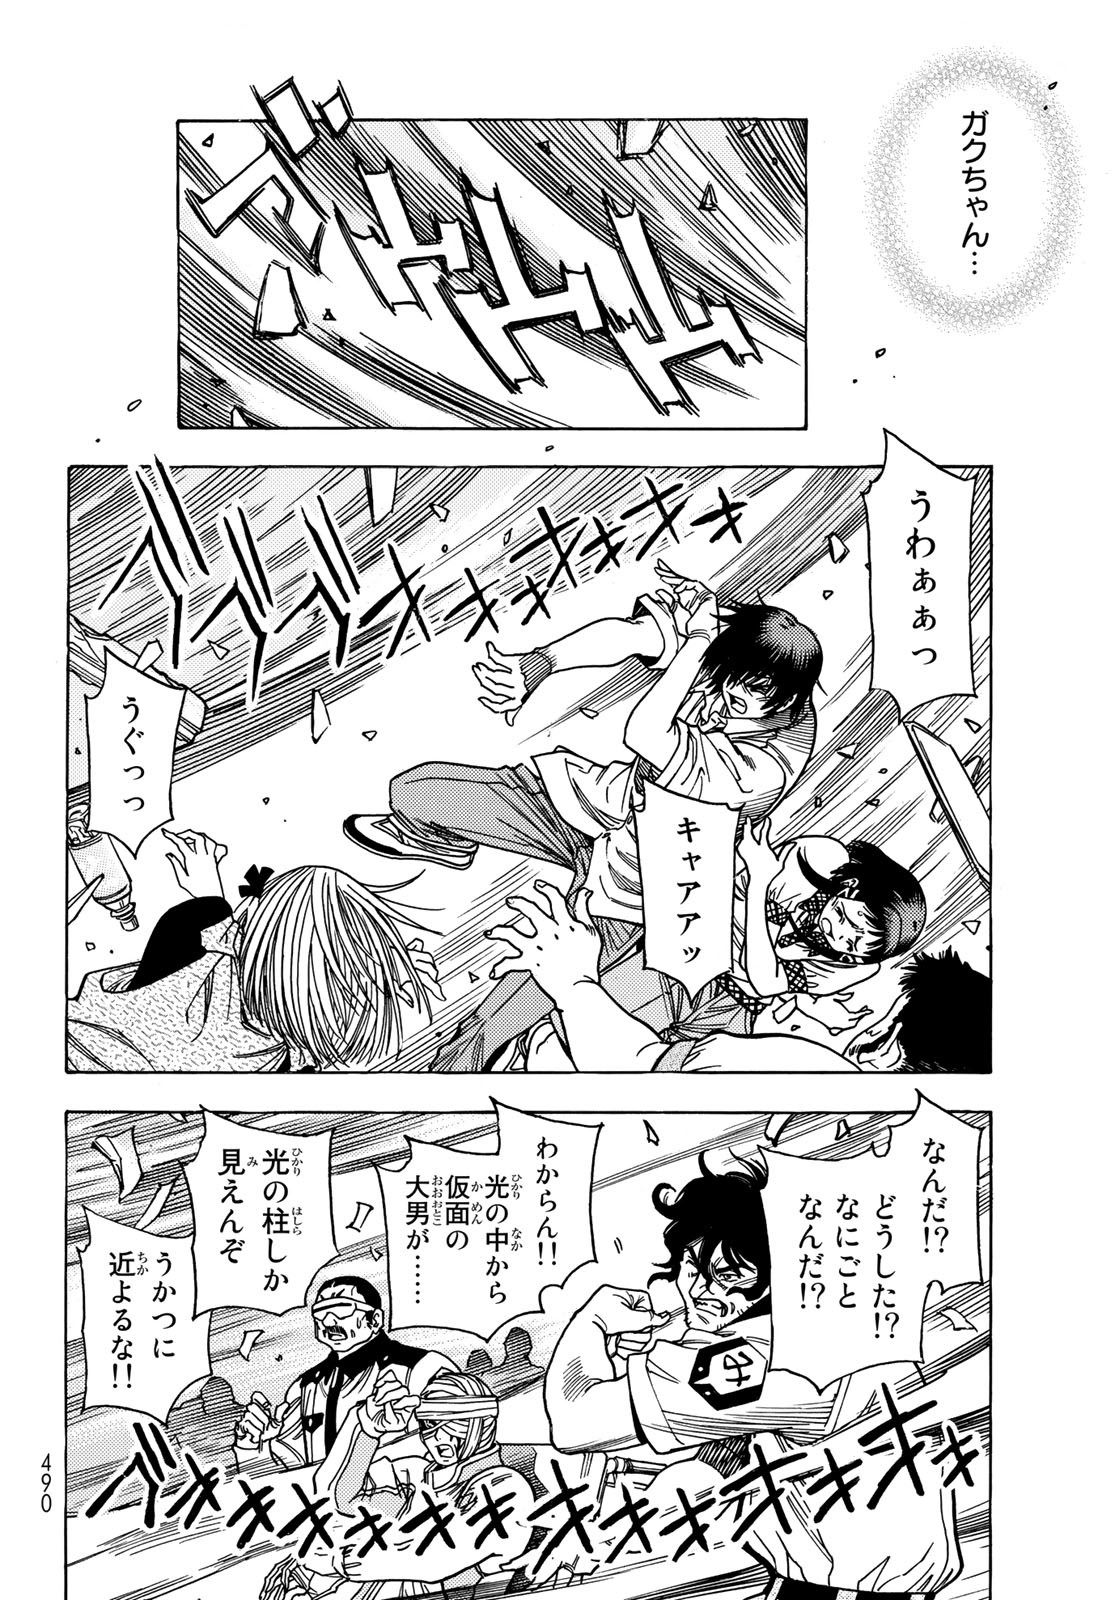 Mugou no Schnell Gear: Chikyuugai Kisouka AI - Chapter 37 - Page 16